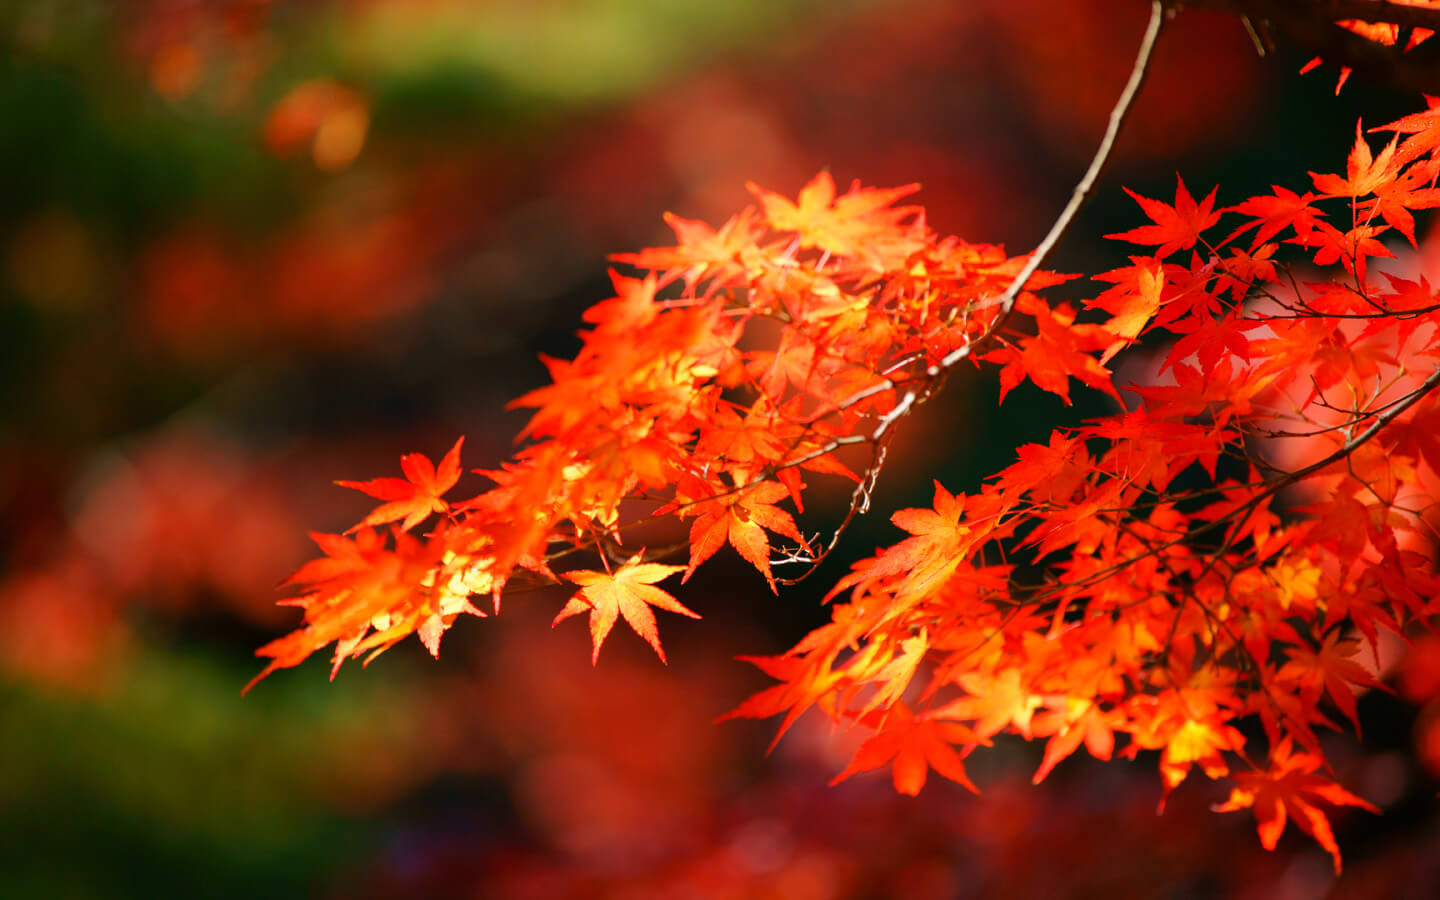 静岡へ絶景を見に行こう ライトアップした紅葉おすすめ名所 浜松エリアの生活 エンタメ情報はエネフィブログ